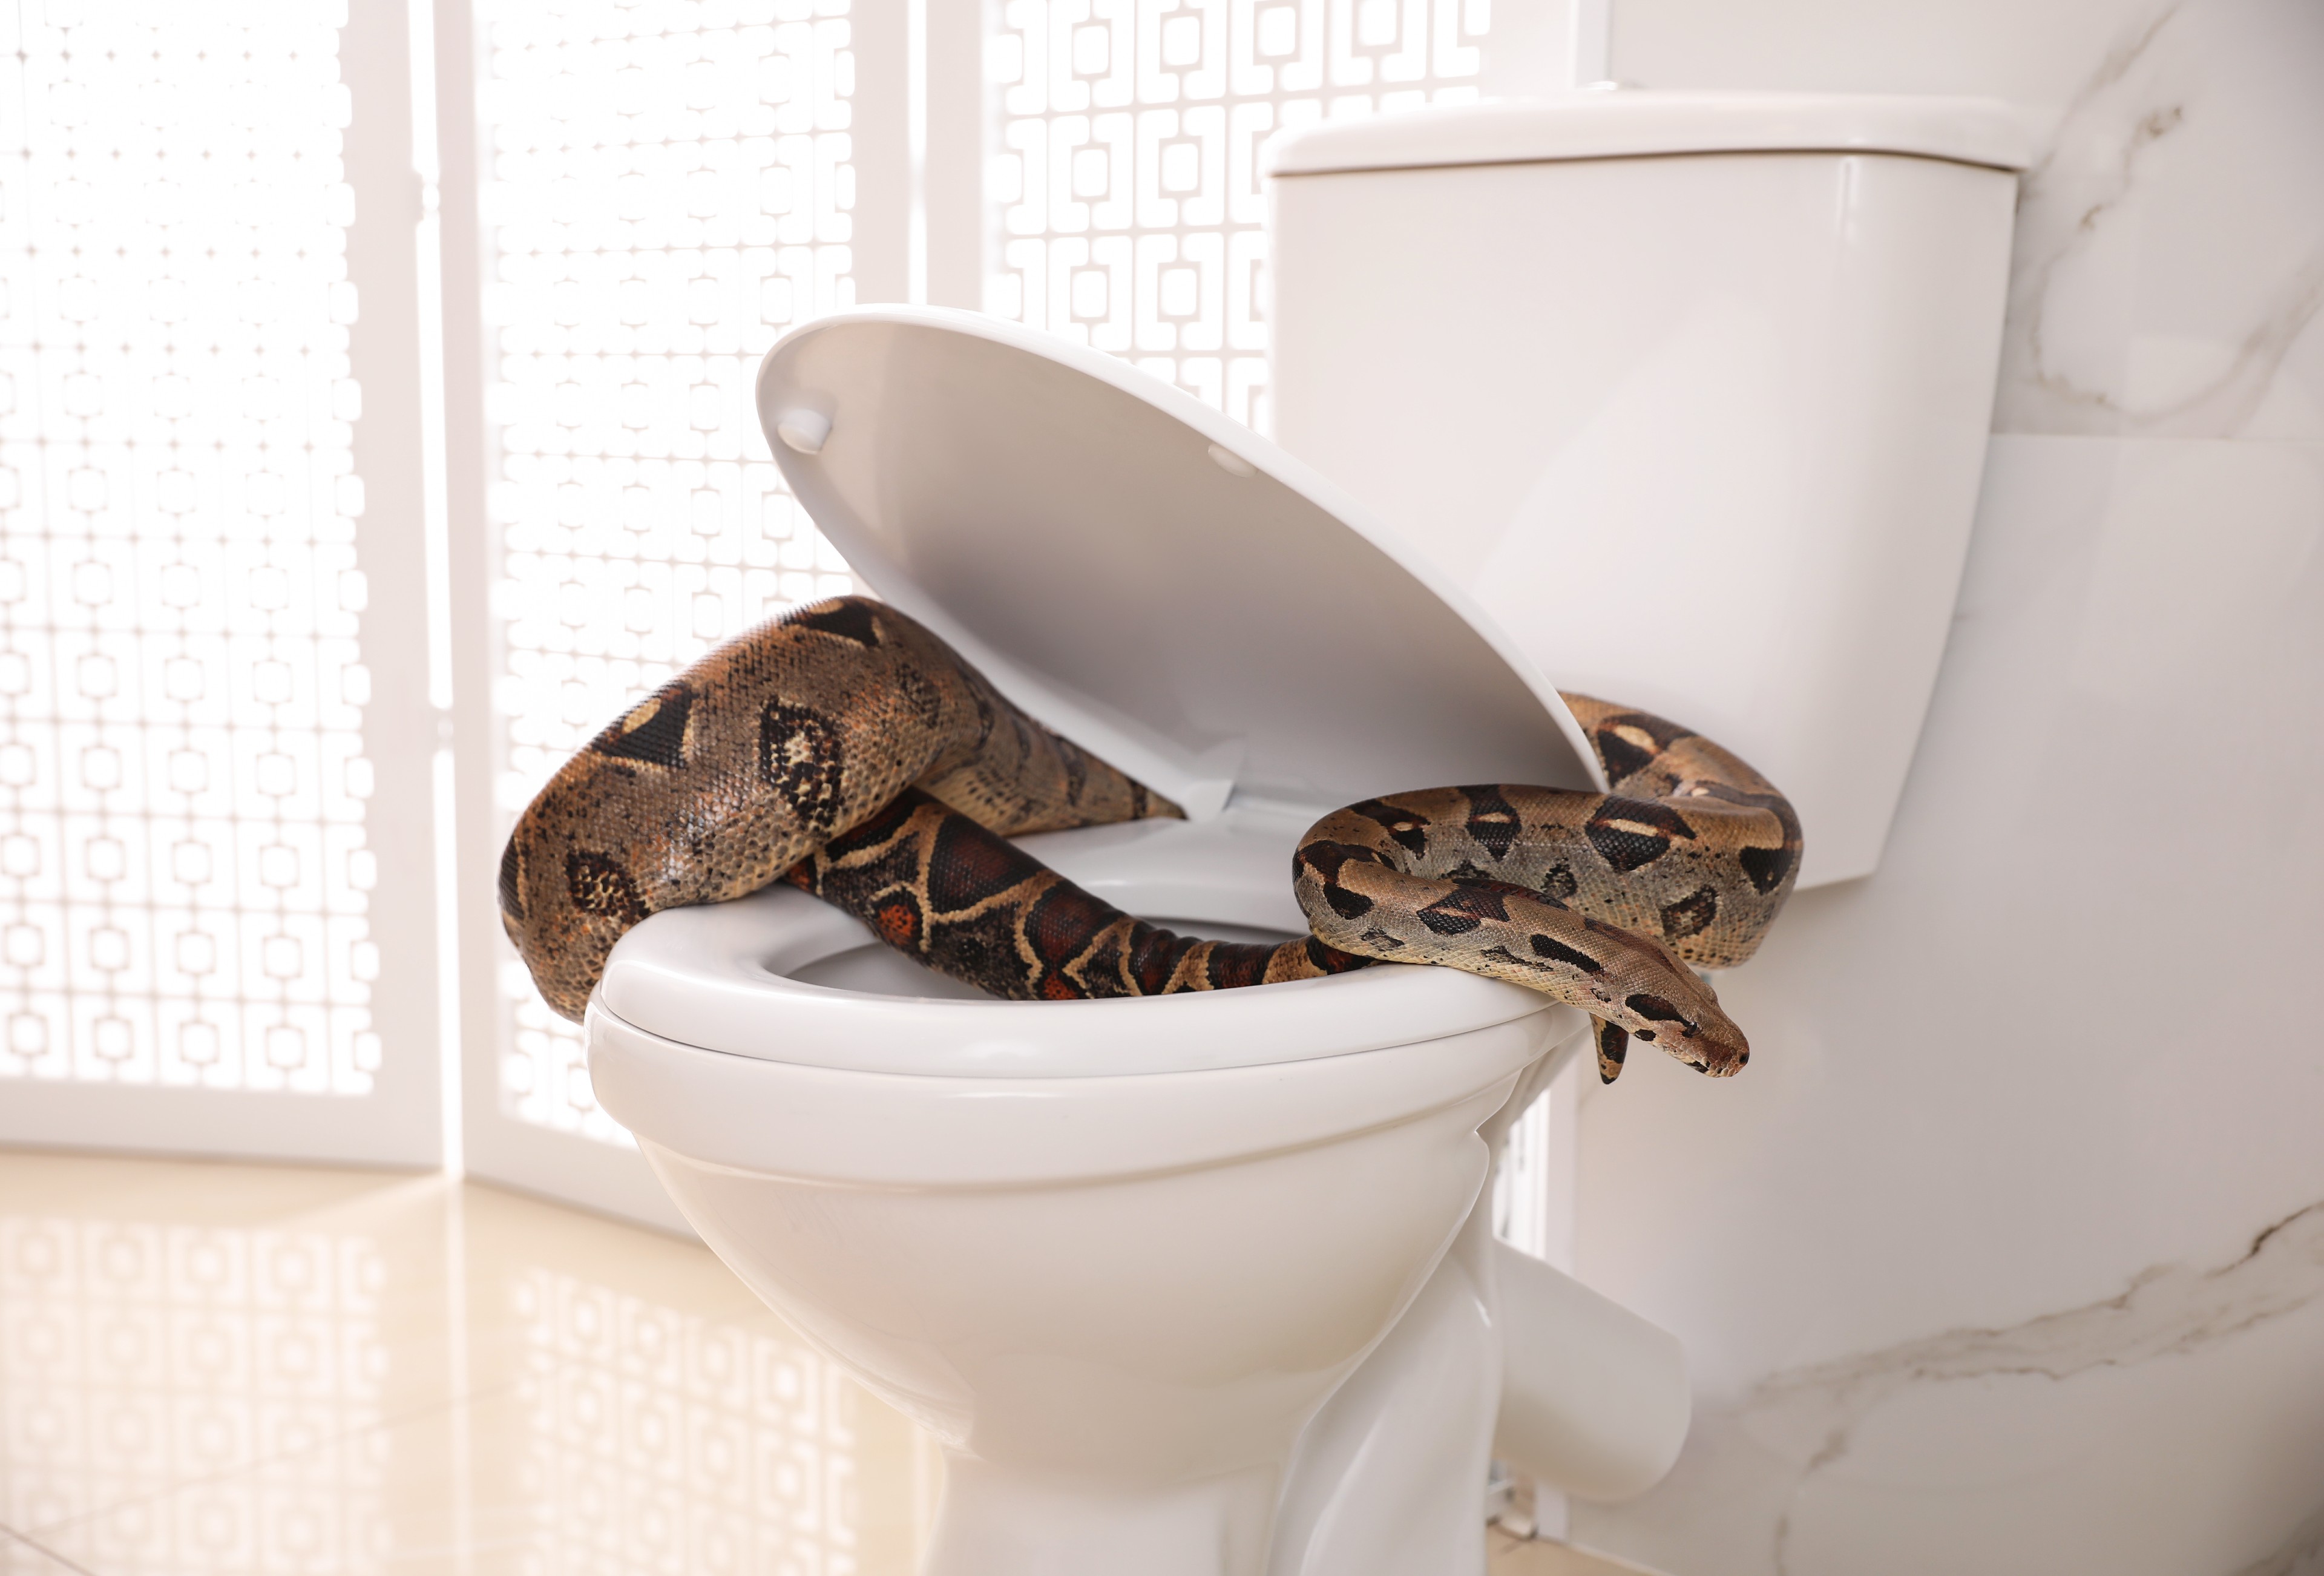 Un serpent qui sort des toilettes, ici un boa constrictor. © New Africa, Adobe Stock